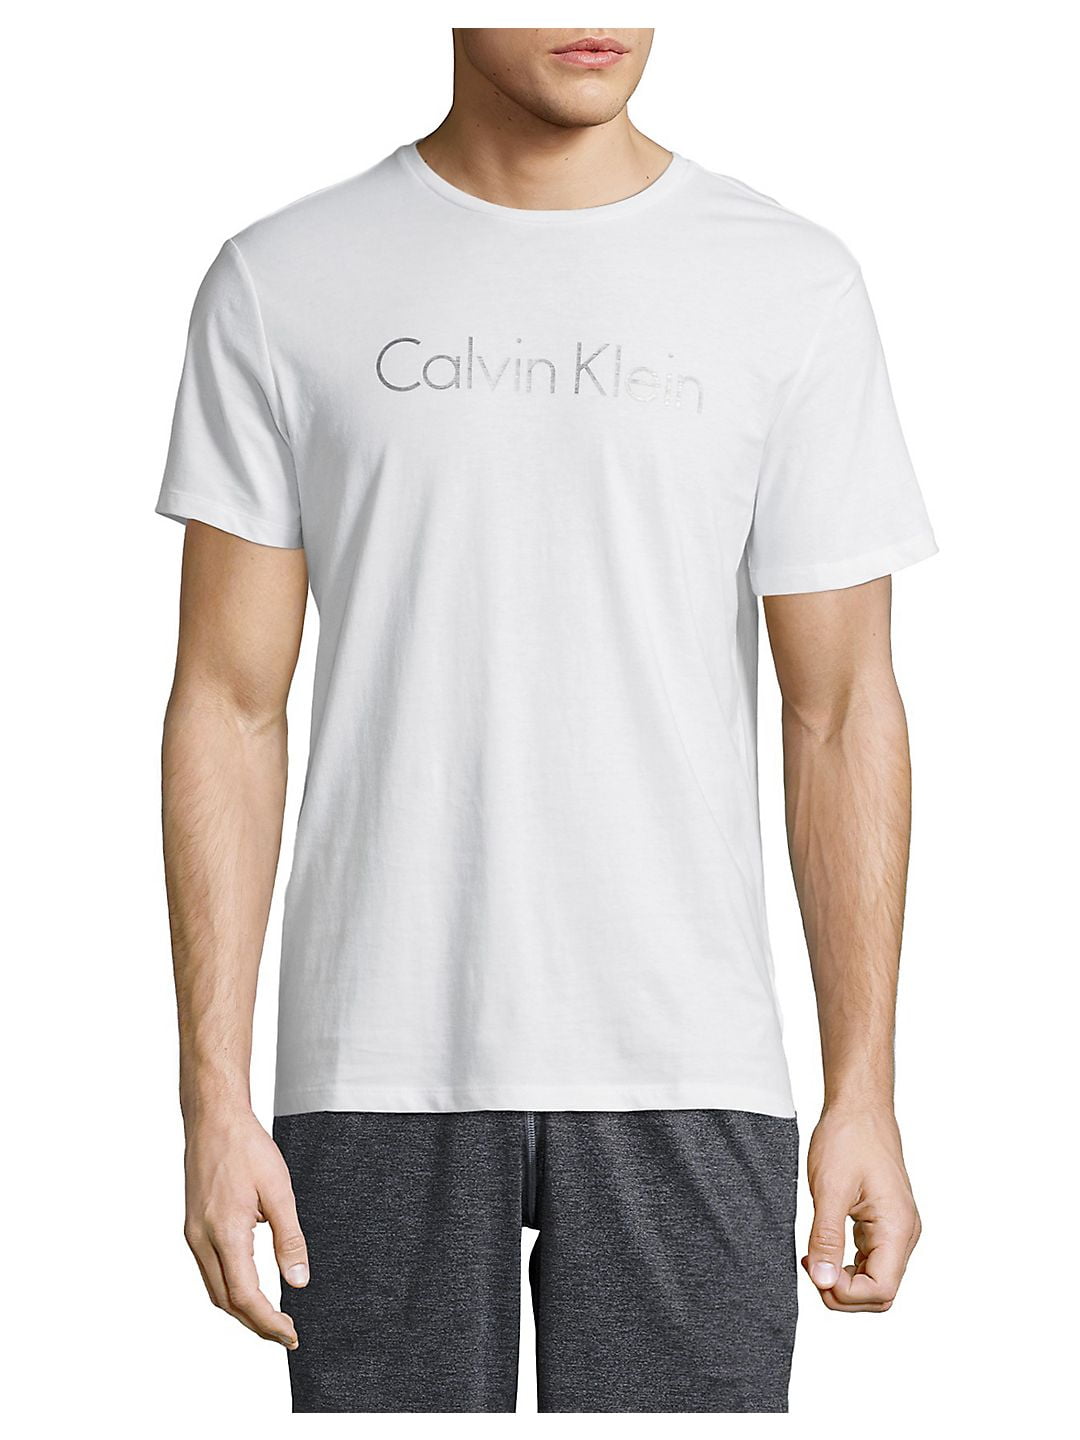 Calvin Klein - calvin klein crew jersey t-shirt with heat transfer ...